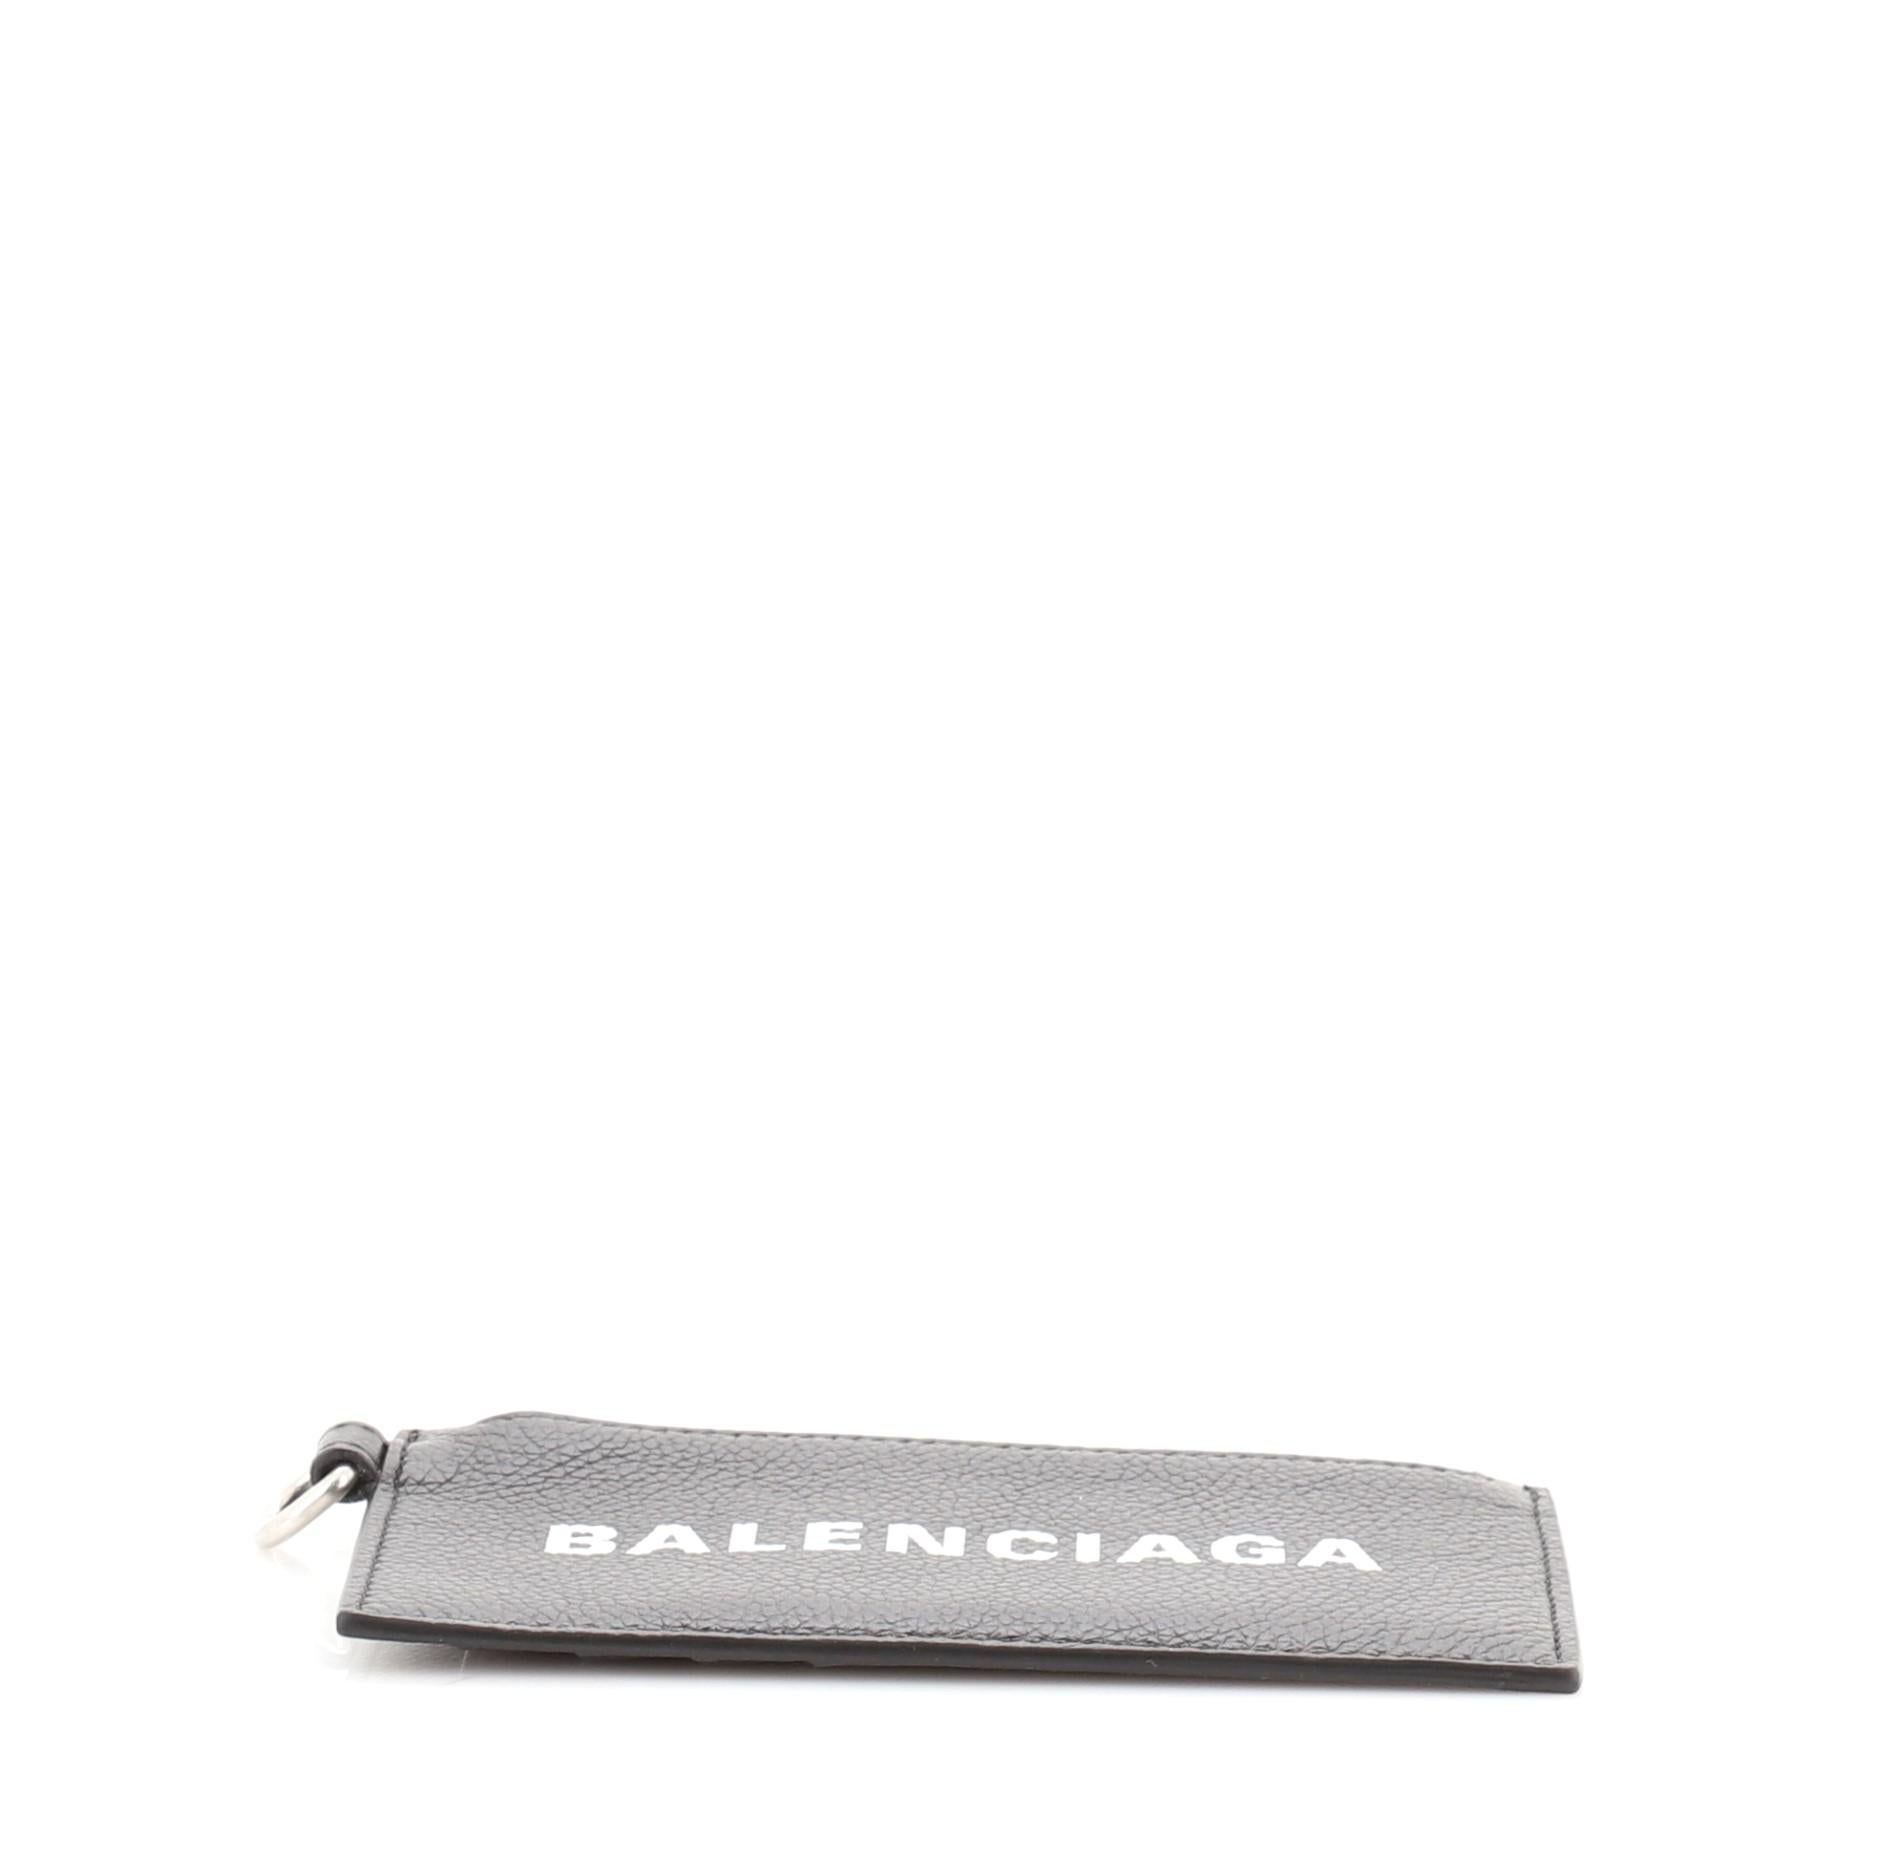 balenciaga card holder with strap